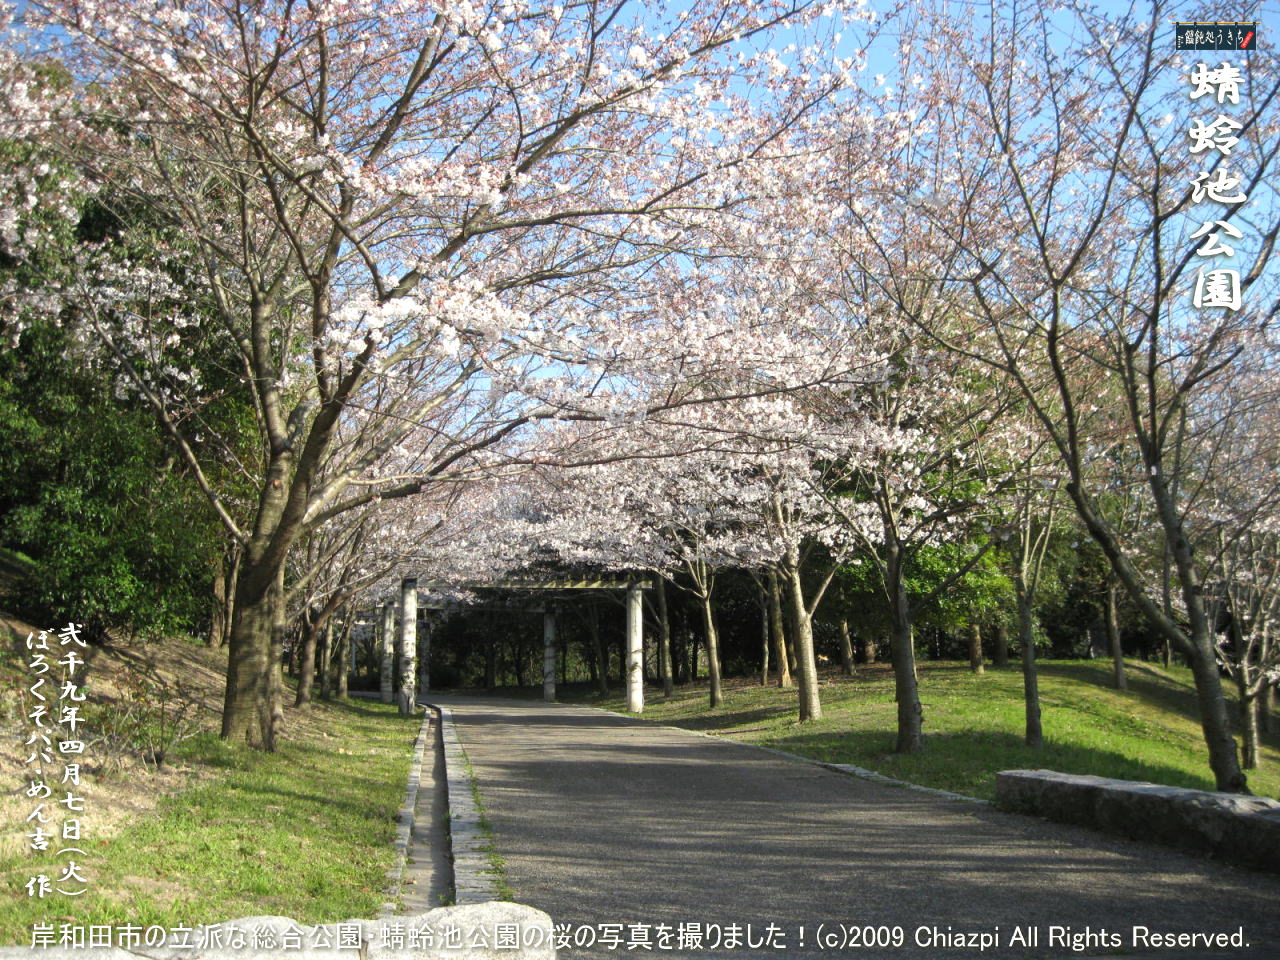 4／7（火）【蜻蛉池公園】岸和田市の立派な総合公園・蜻蛉池公園の桜の写真を撮りました！＠キャツピ＆めん吉の【ぼろくそパパの独り言】
　　　　▼クリックで1280x960pxlsに拡大します。